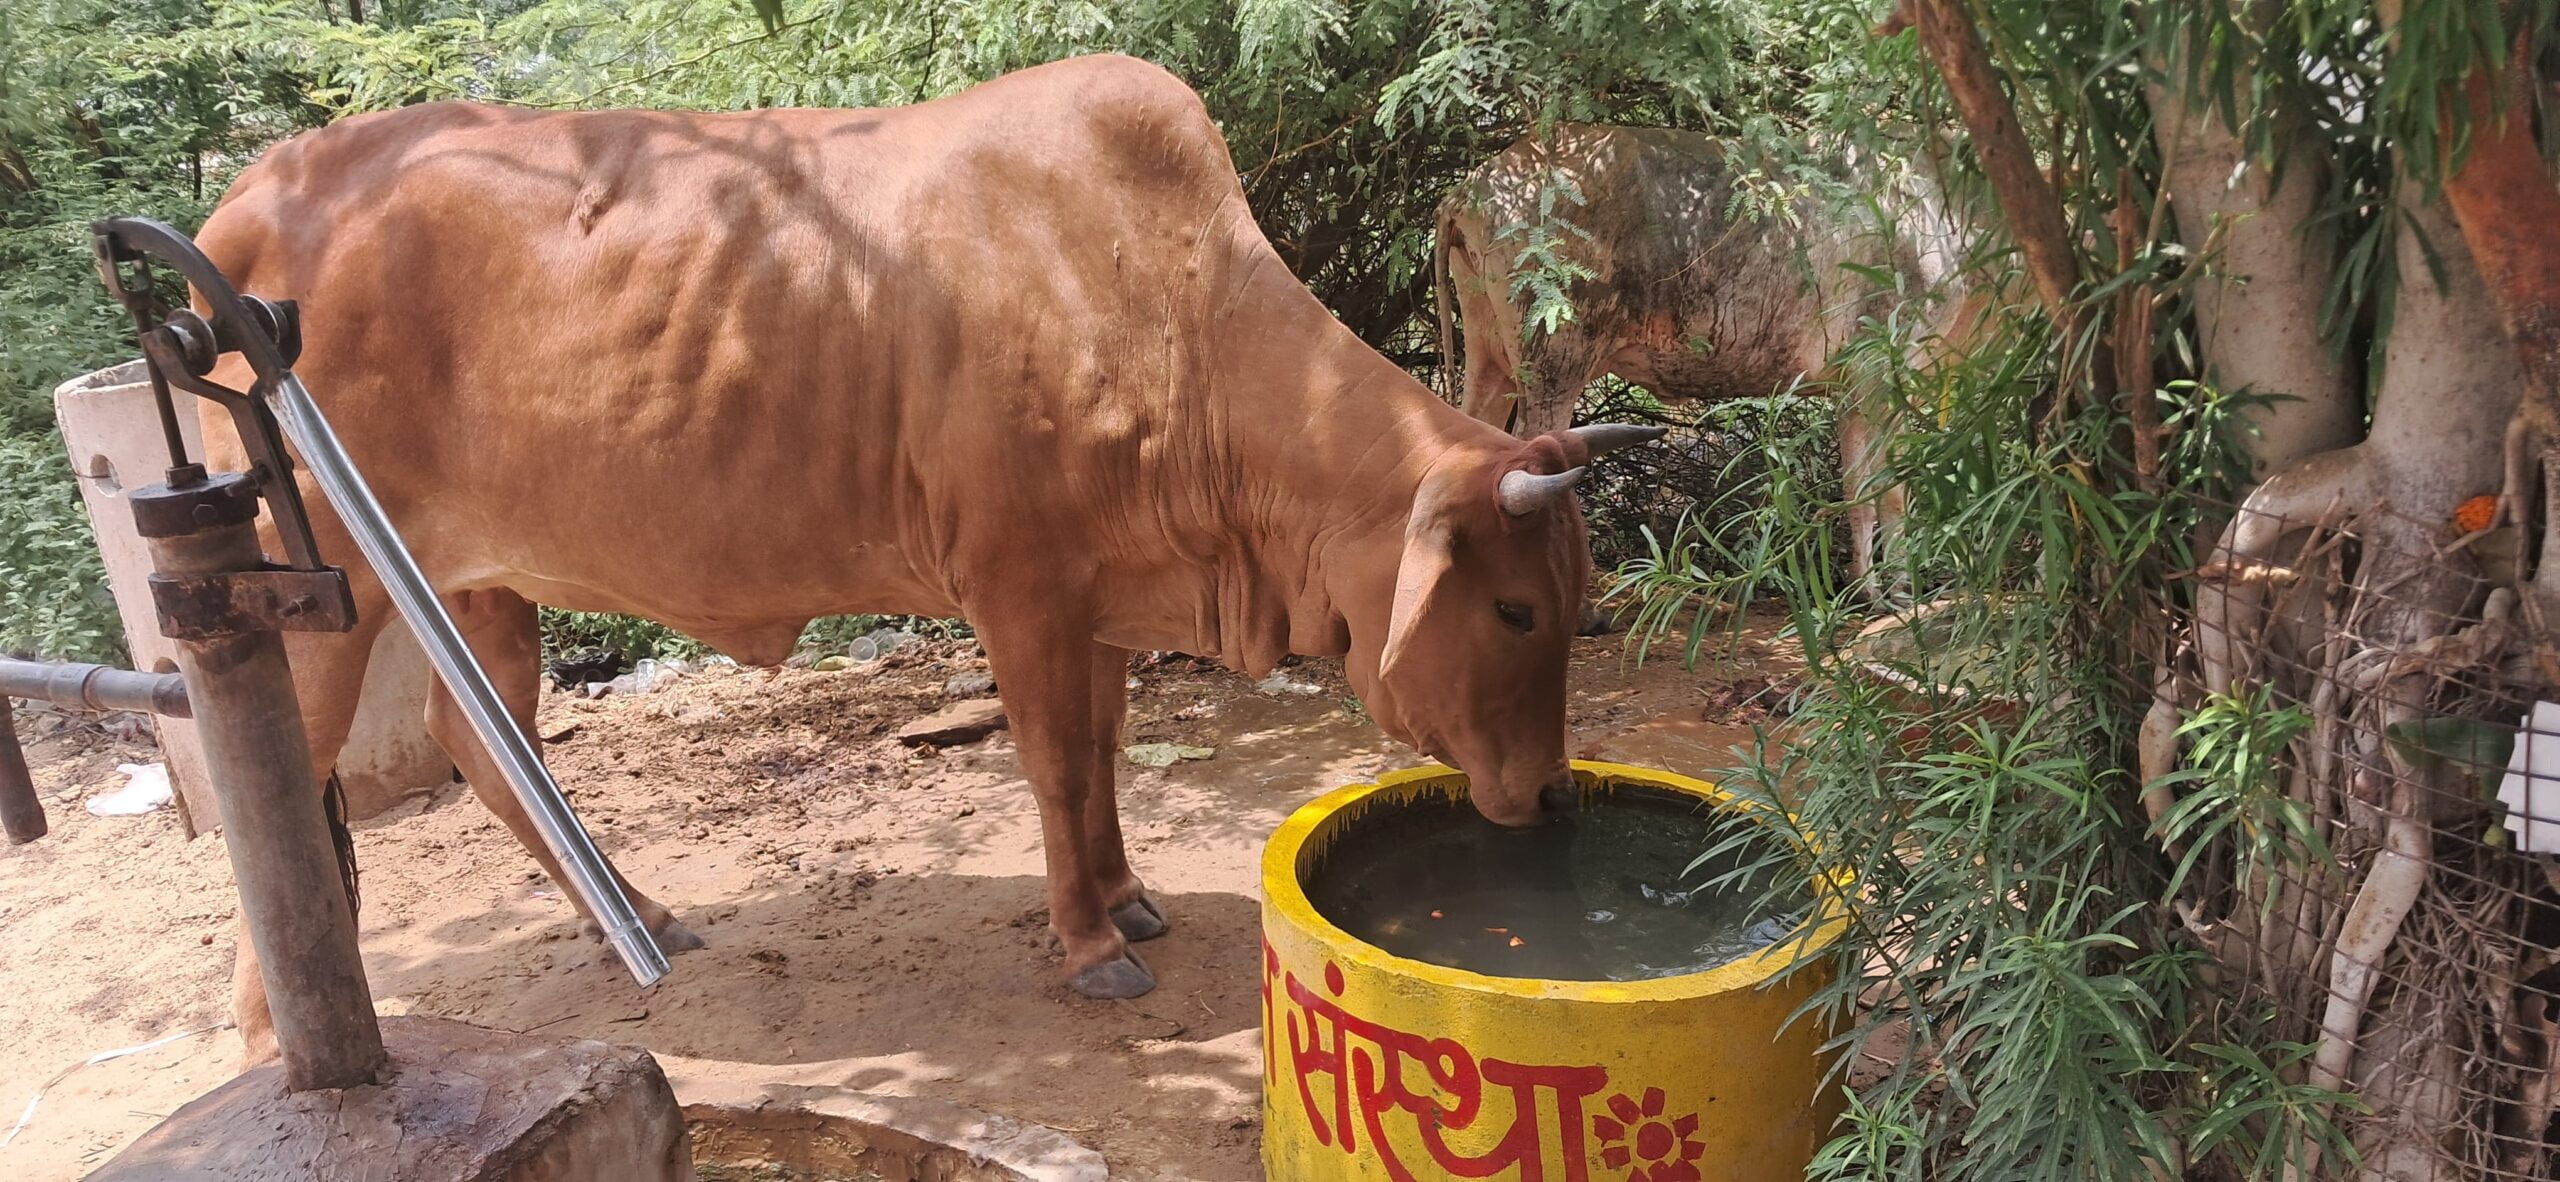 Bharatpur news today: भरतपुर टॉक्स संस्था ने बेजुबान पशु पक्षियों के लिए 5 स्थानों पर रखवाई जल कुंडिया